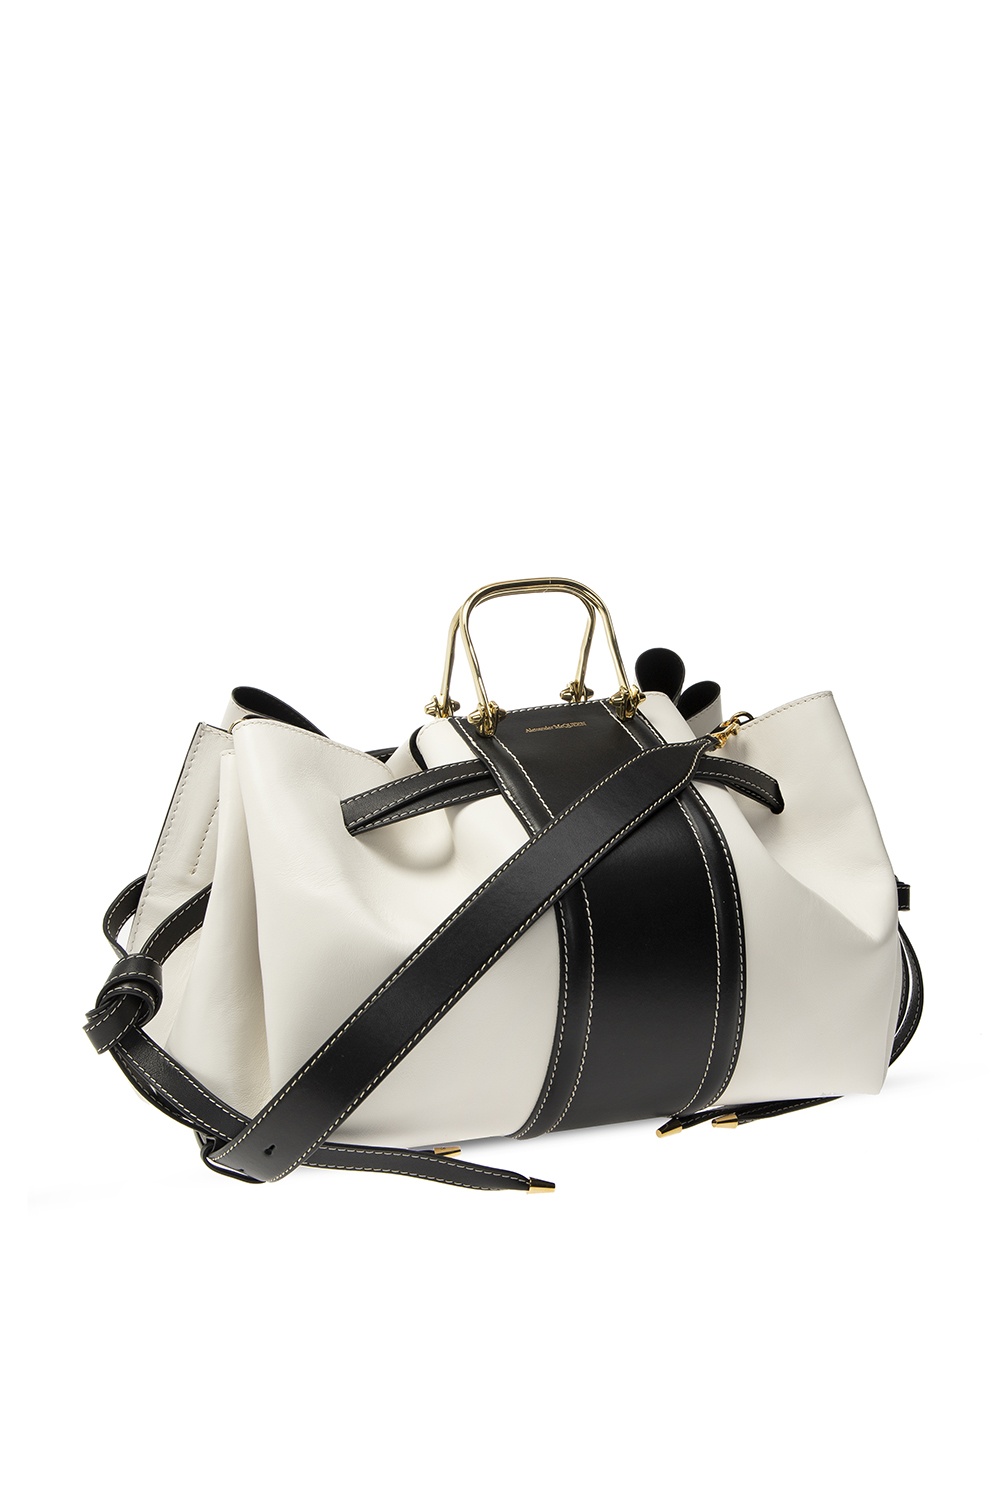 ‘The Drawstring’ handbag Alexander McQueen - Vitkac Spain